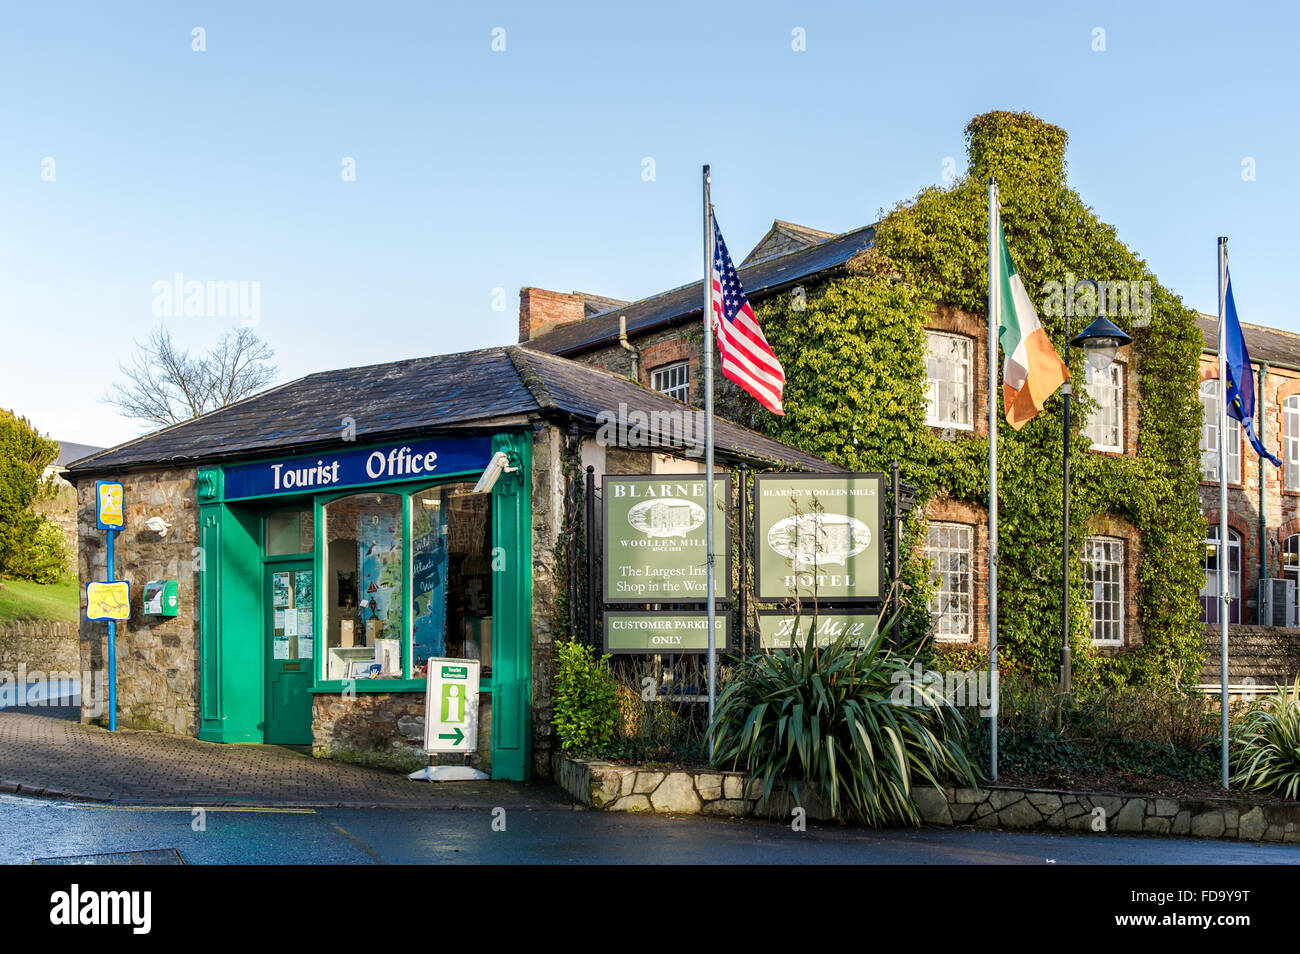 Office de Tourisme de Blarney, Blarney, Cork, Irlande. Banque D'Images